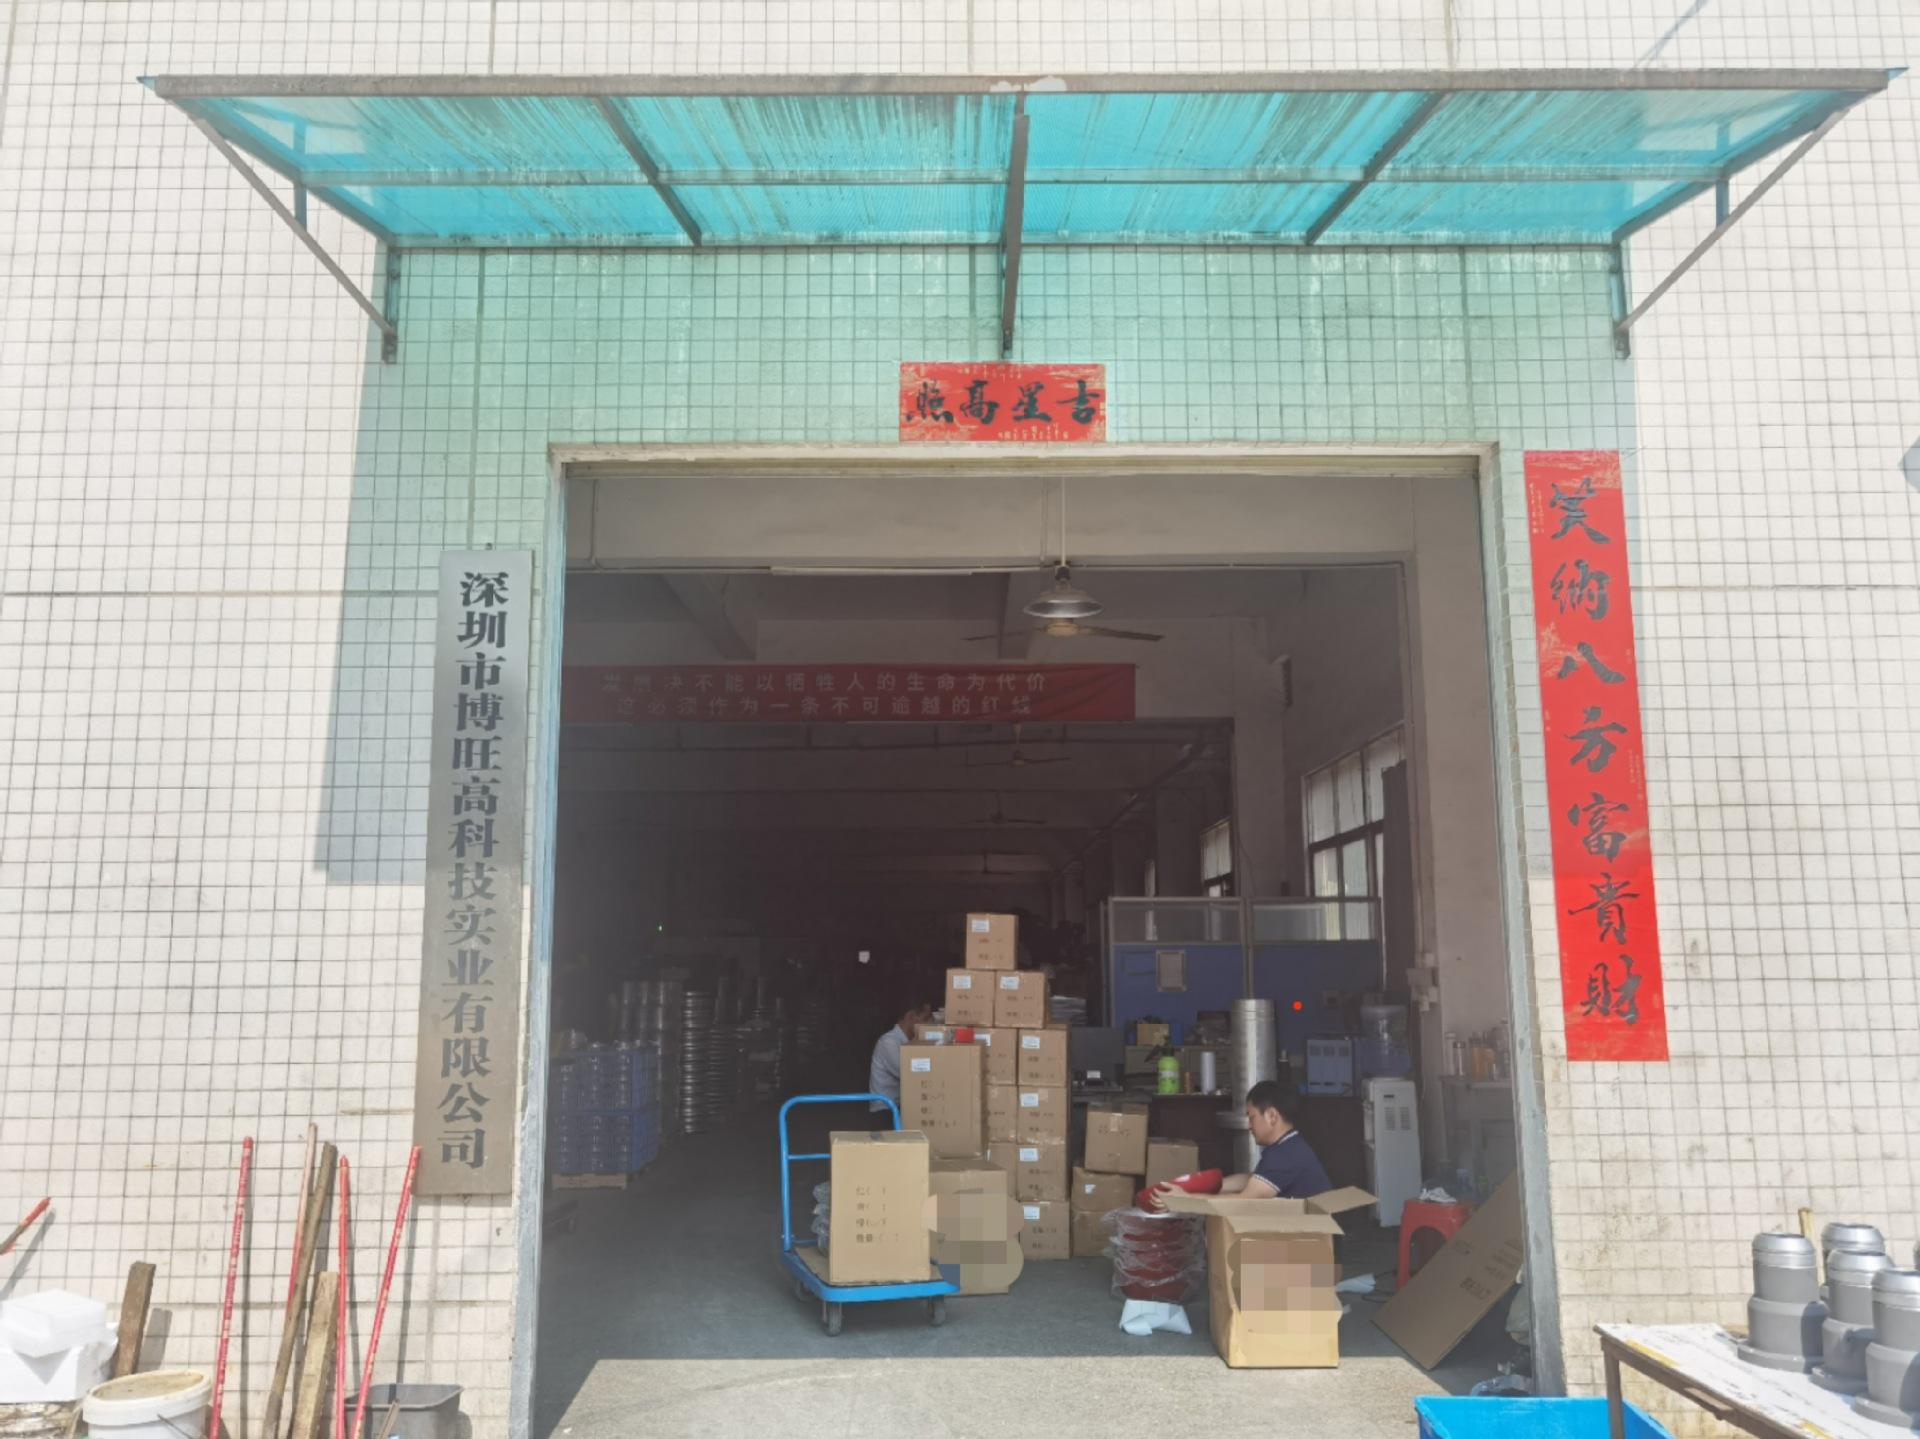   Shenzhen Bowang High-tech Industrial Co., LTD